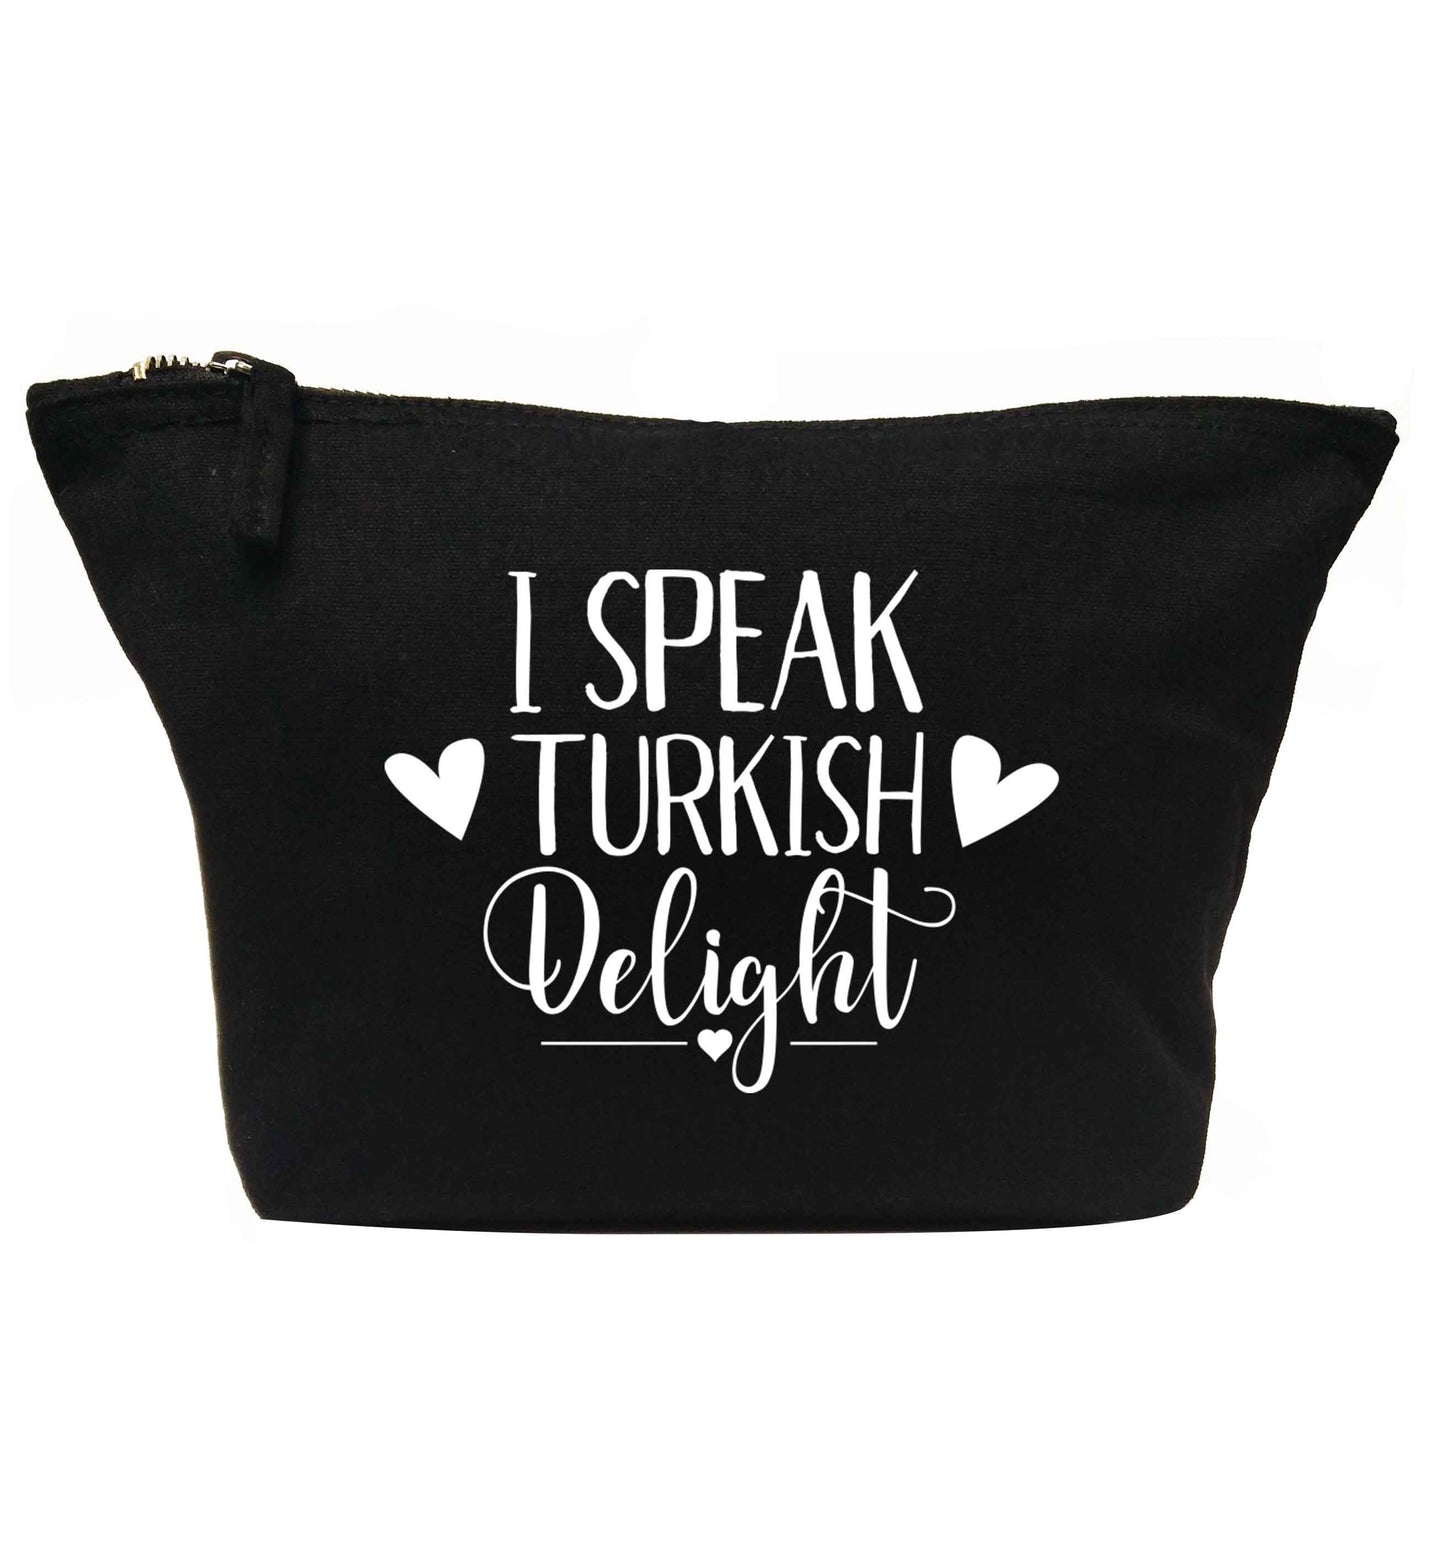 I speak turkish...delight | makeup / wash bag